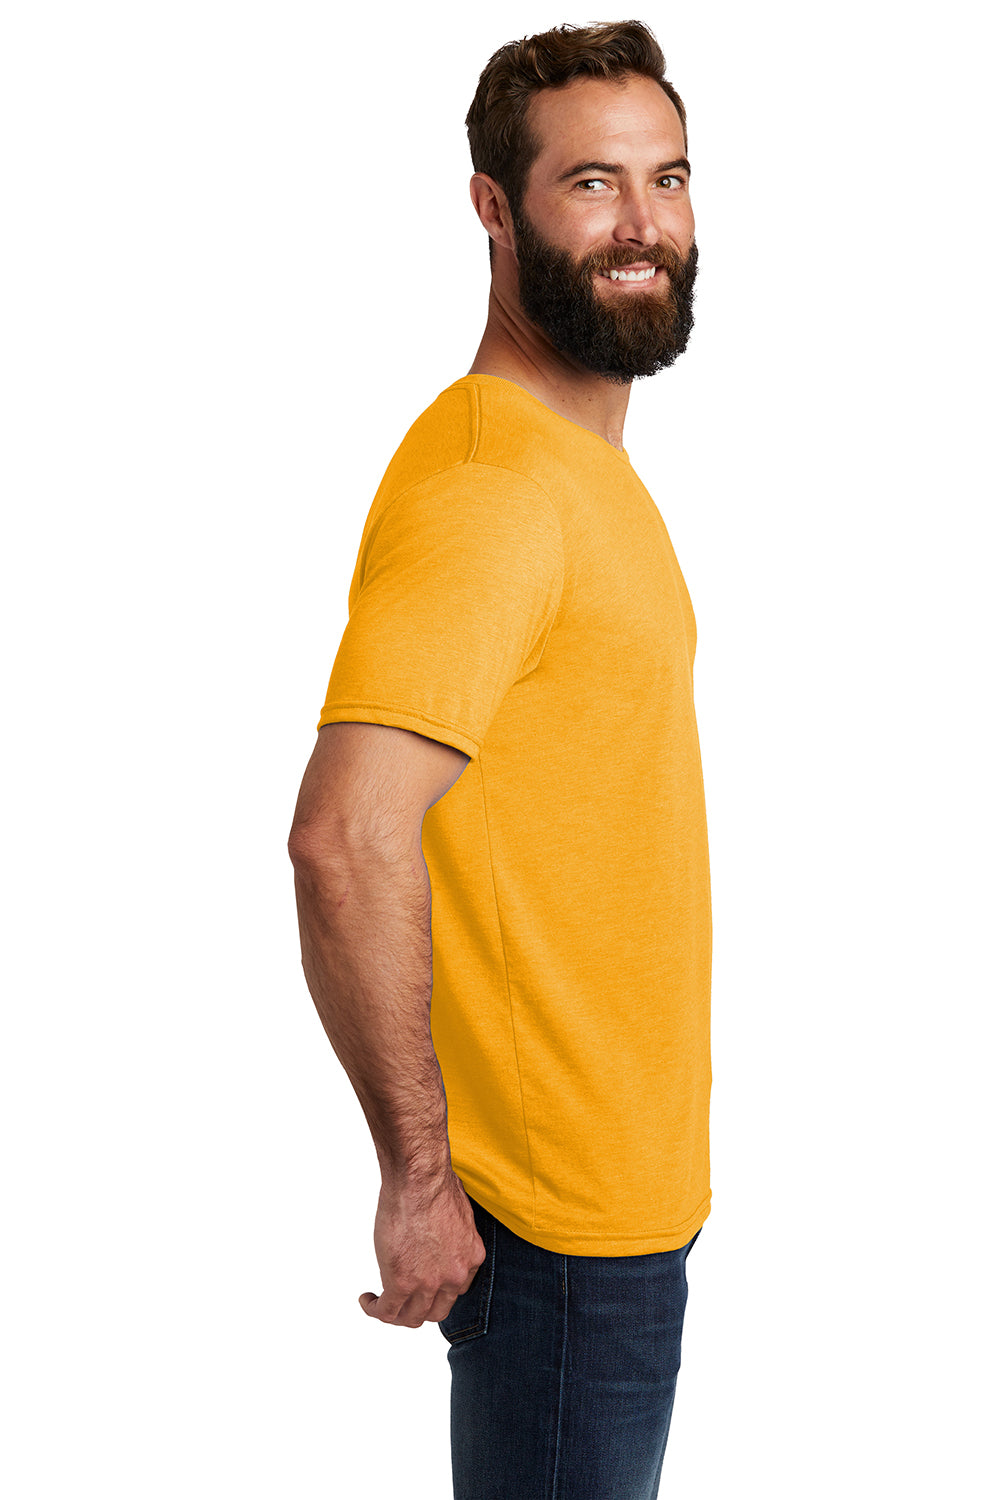 Allmade AL2004 Mens Short Sleeve Crewneck T-Shirt Orange You Fancy Model Side